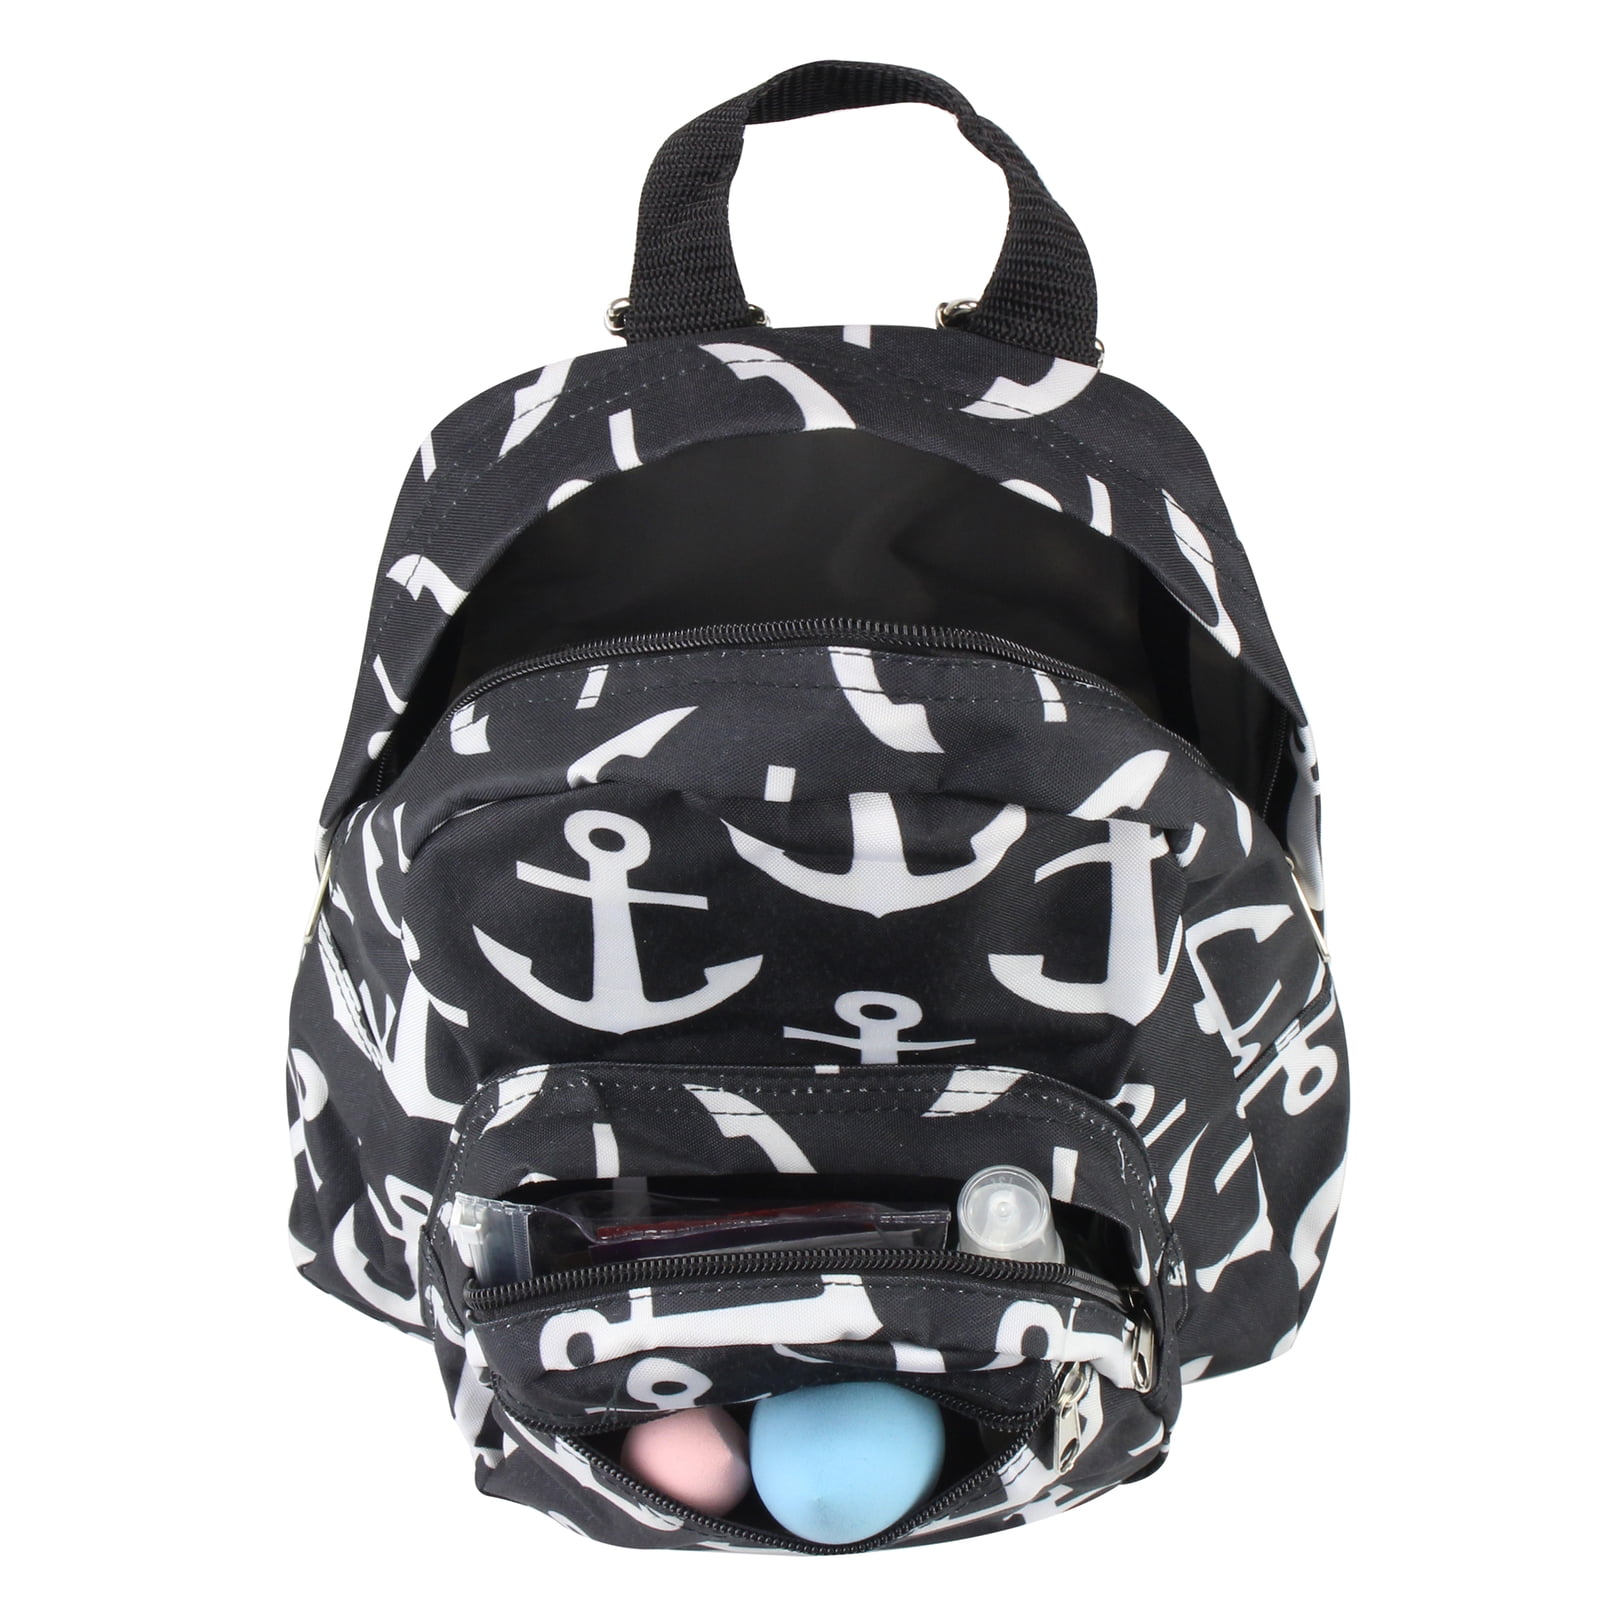 Zodaca Stylish Kids Small Travel Backpack Girls Boys Bookbag Shoulder Children&#39;s School Bag for ...